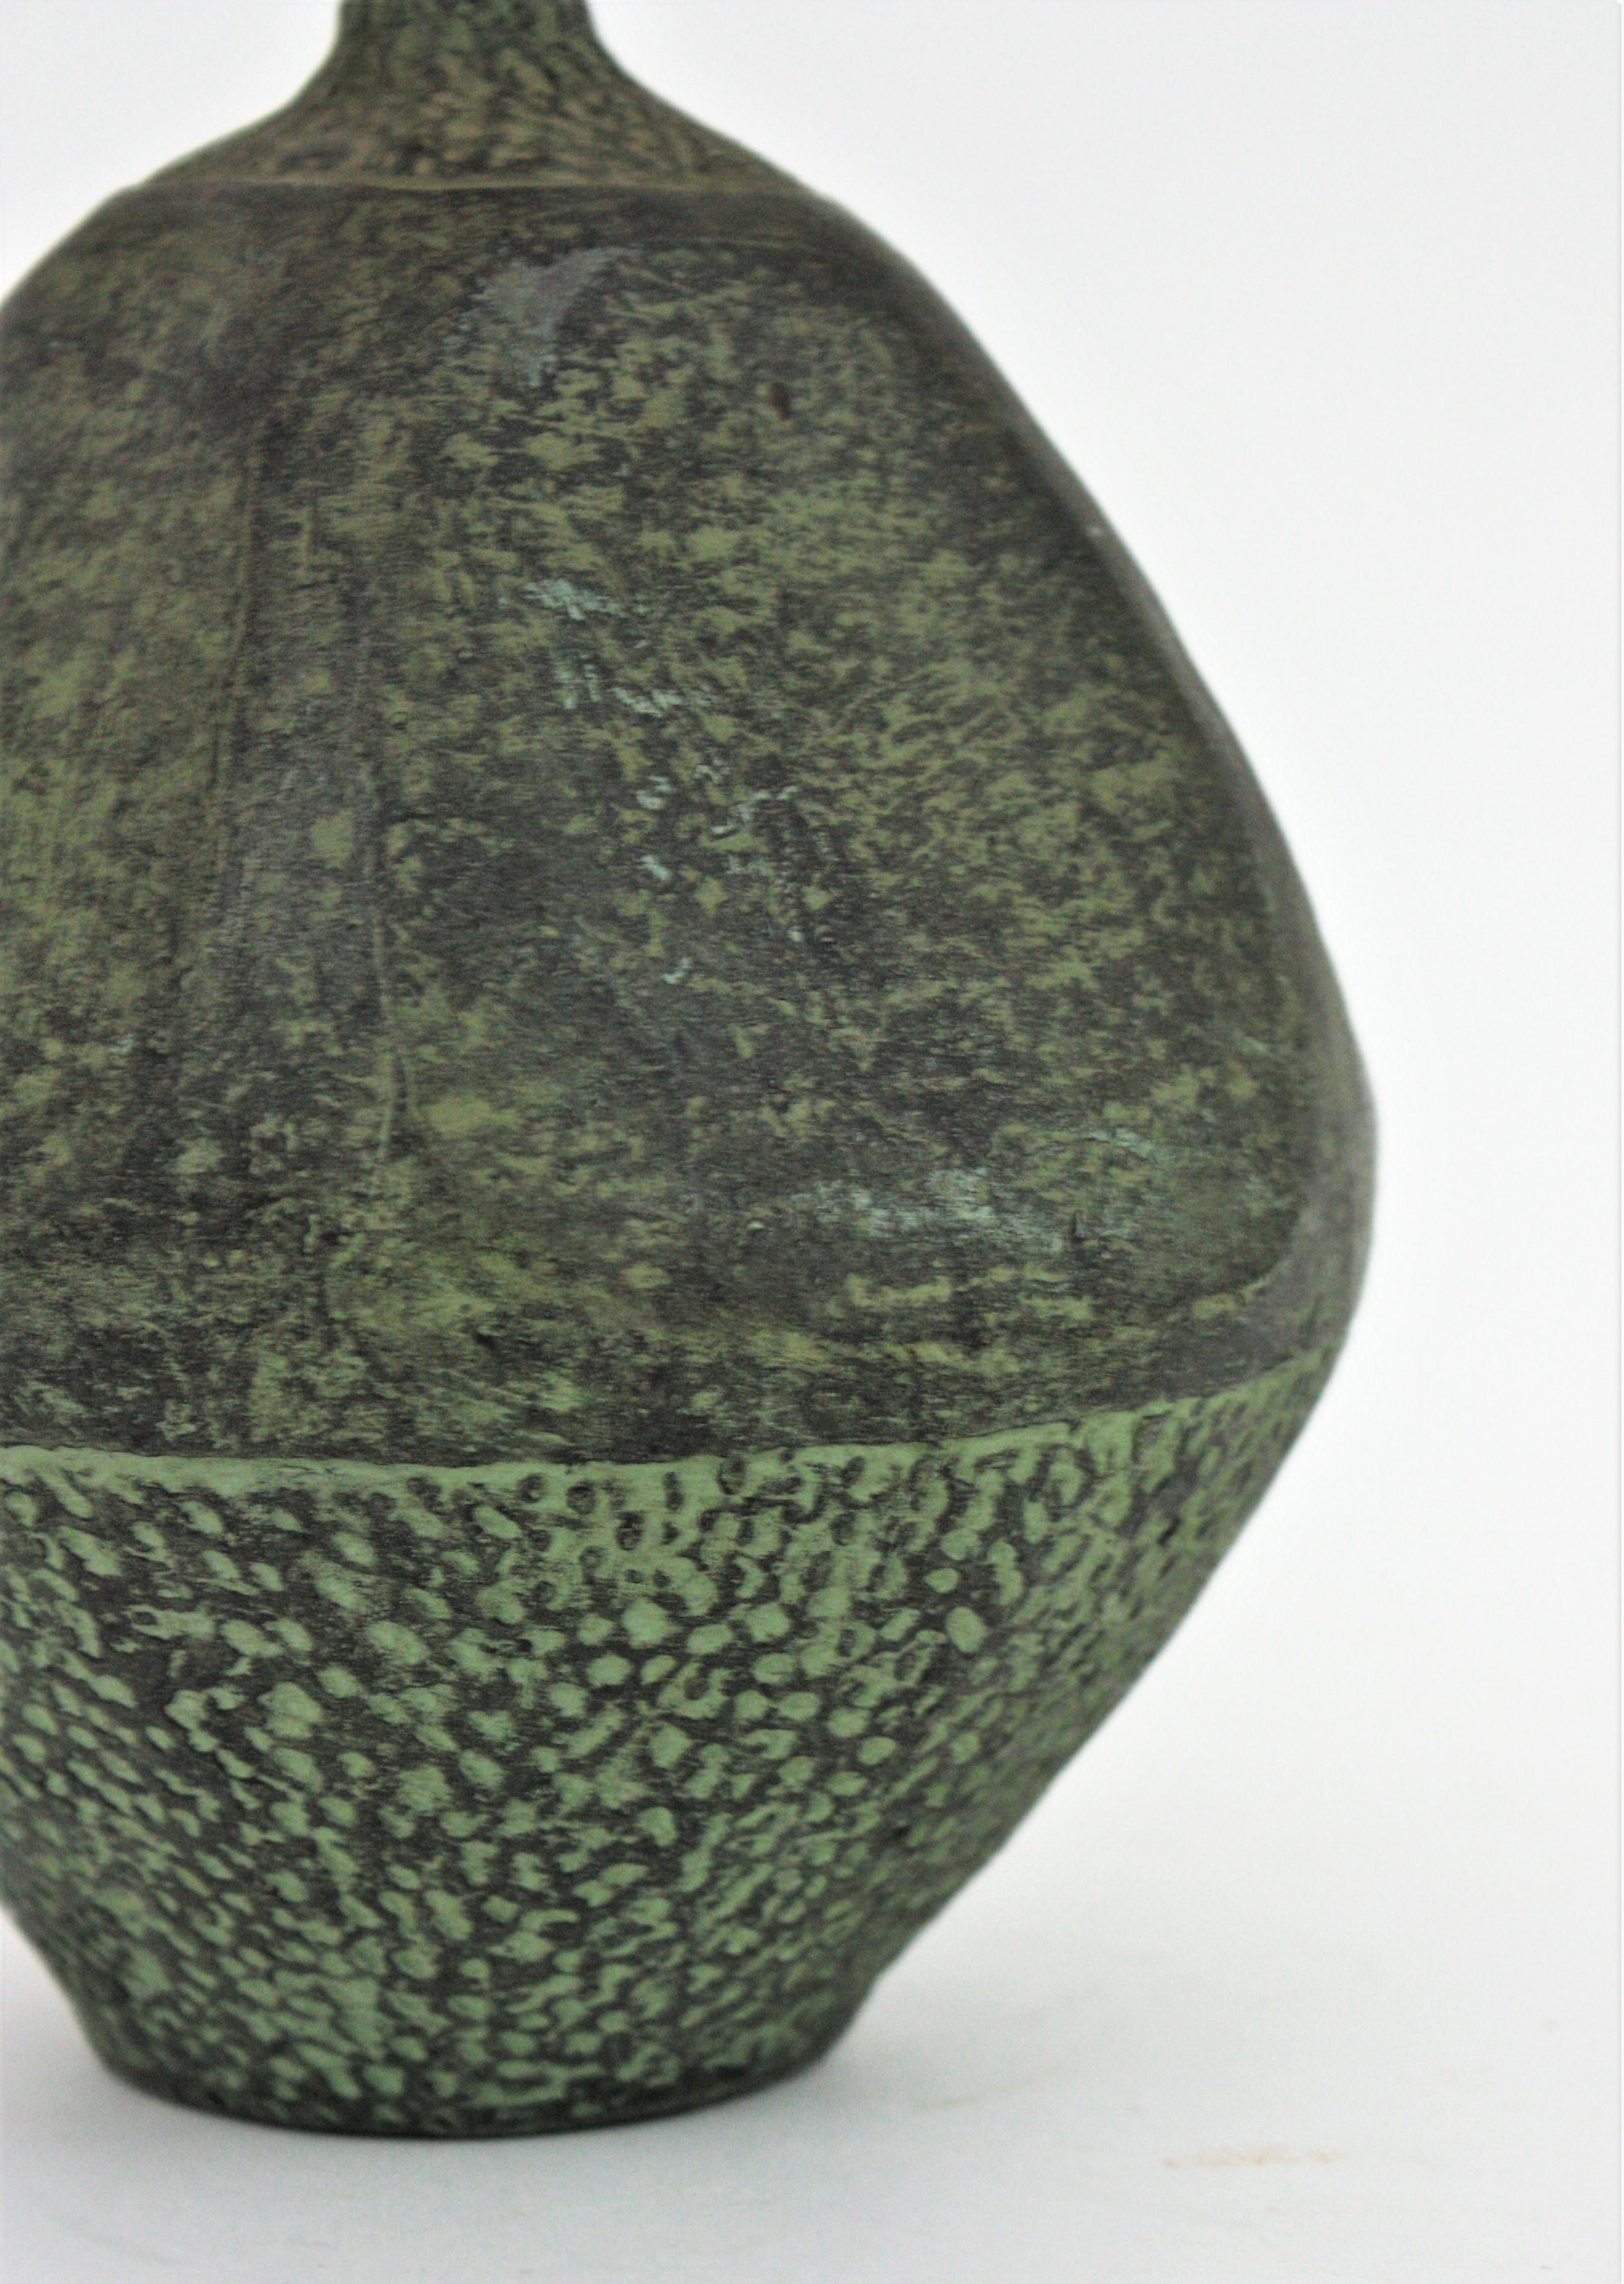 Spanish Green Terracotta Bottle Vase or Vessel For Sale 3